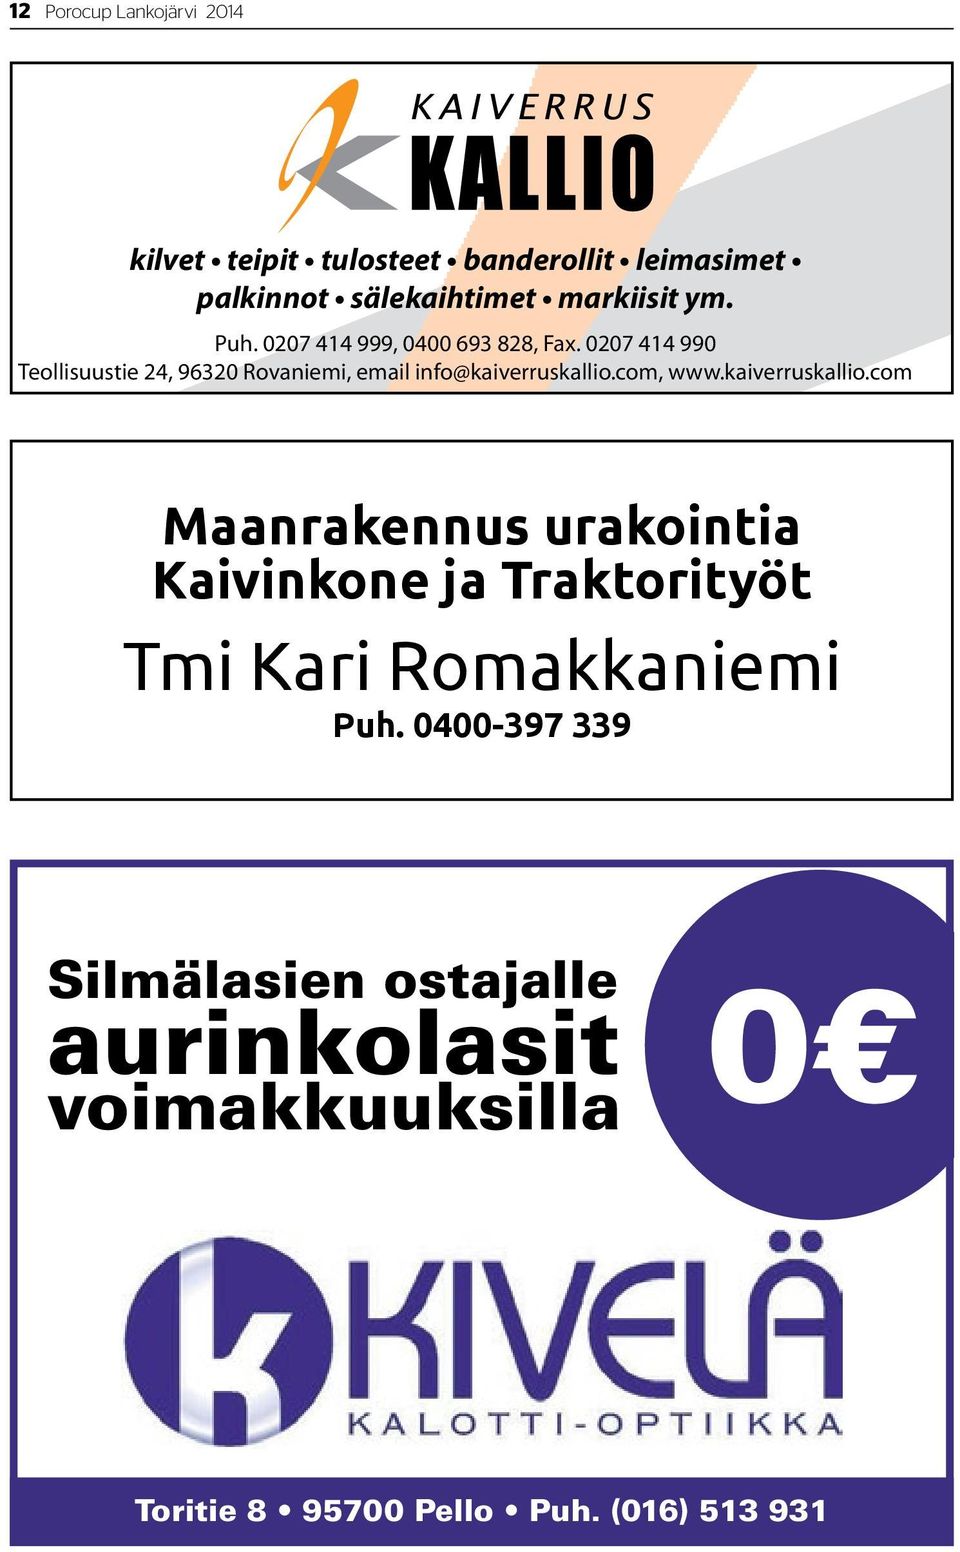 0207 414 990 Teollisuustie 24, 96320 Rovaniemi, email info@kaiverruskallio.